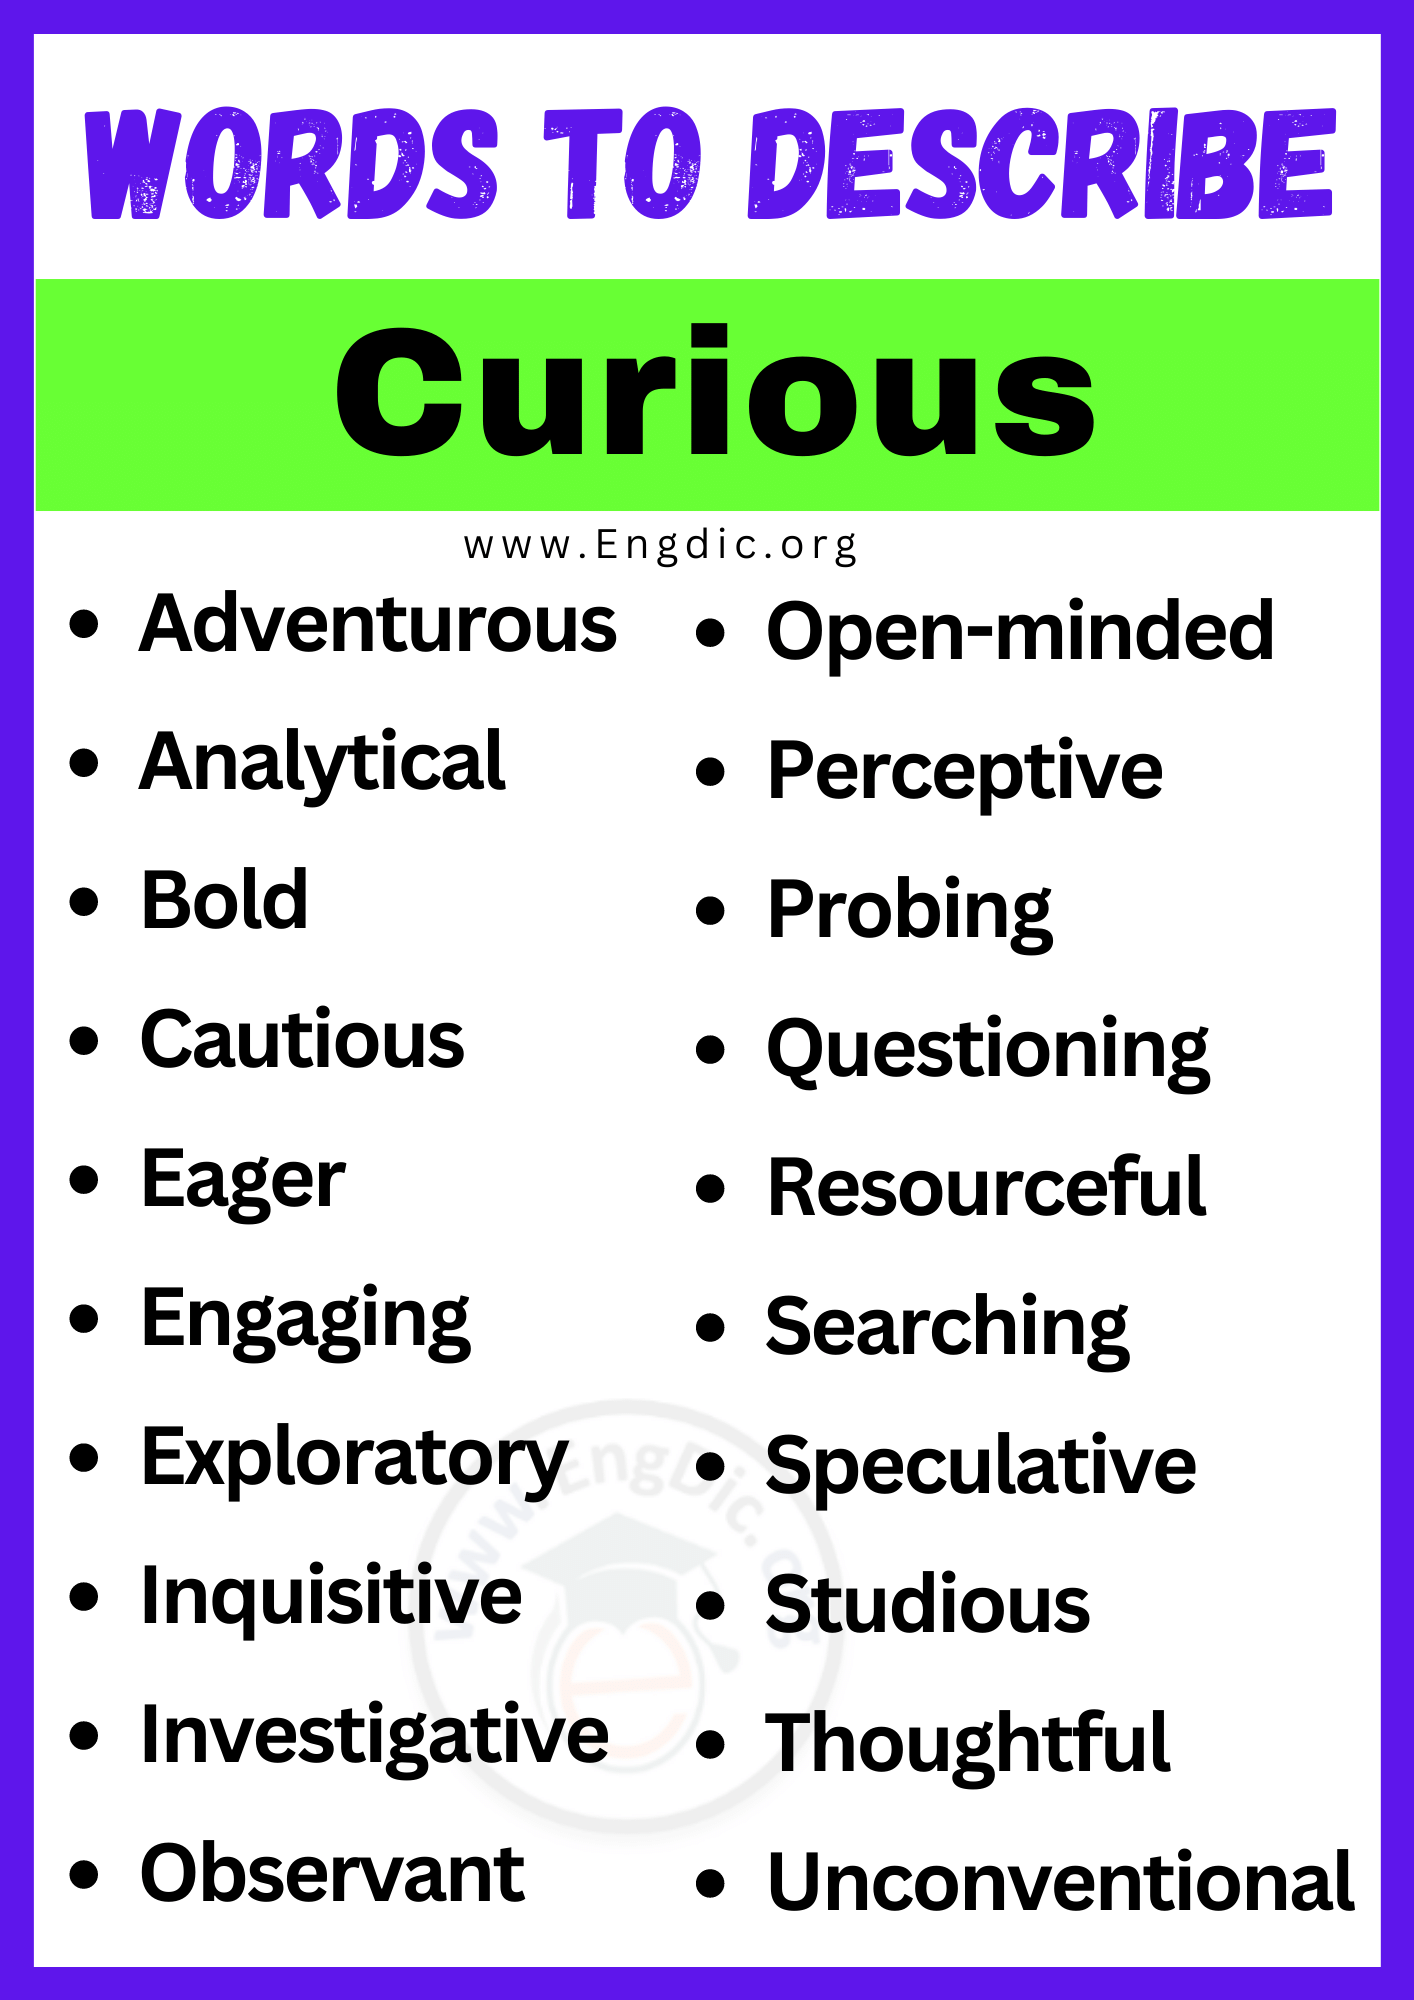 Words to Describe Curious